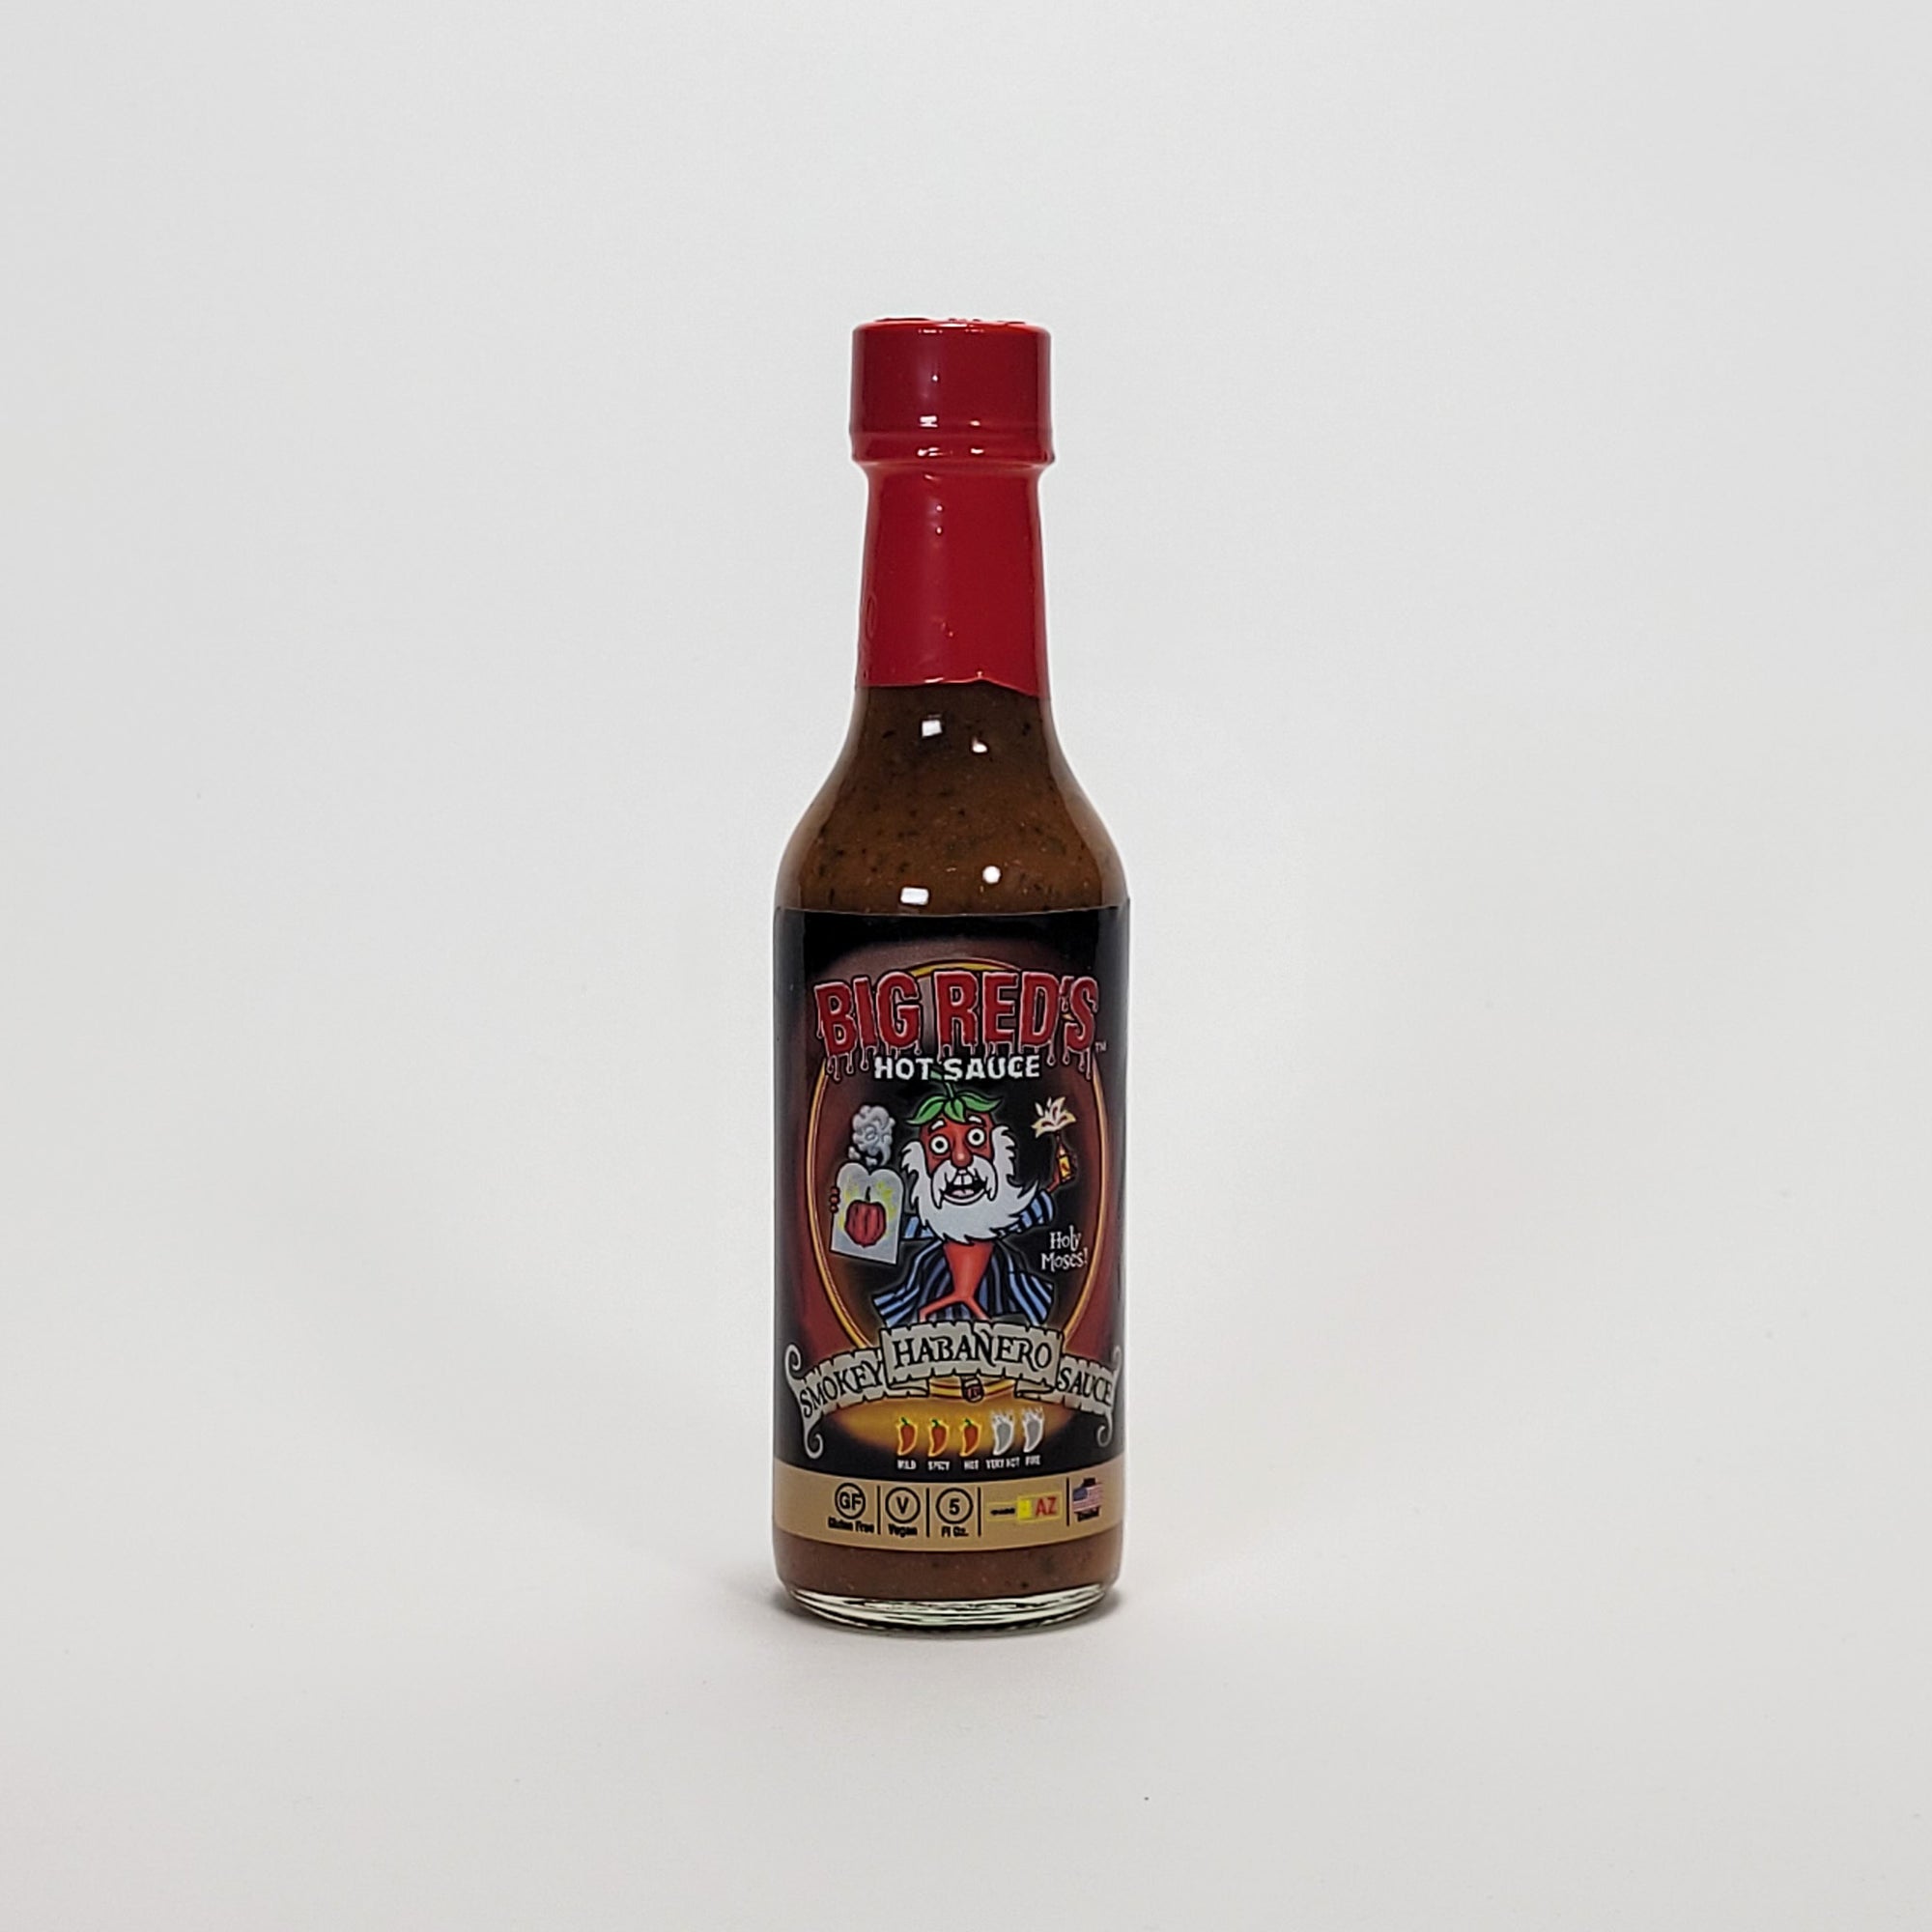 Big Red's Smokey Habanero hot sauce